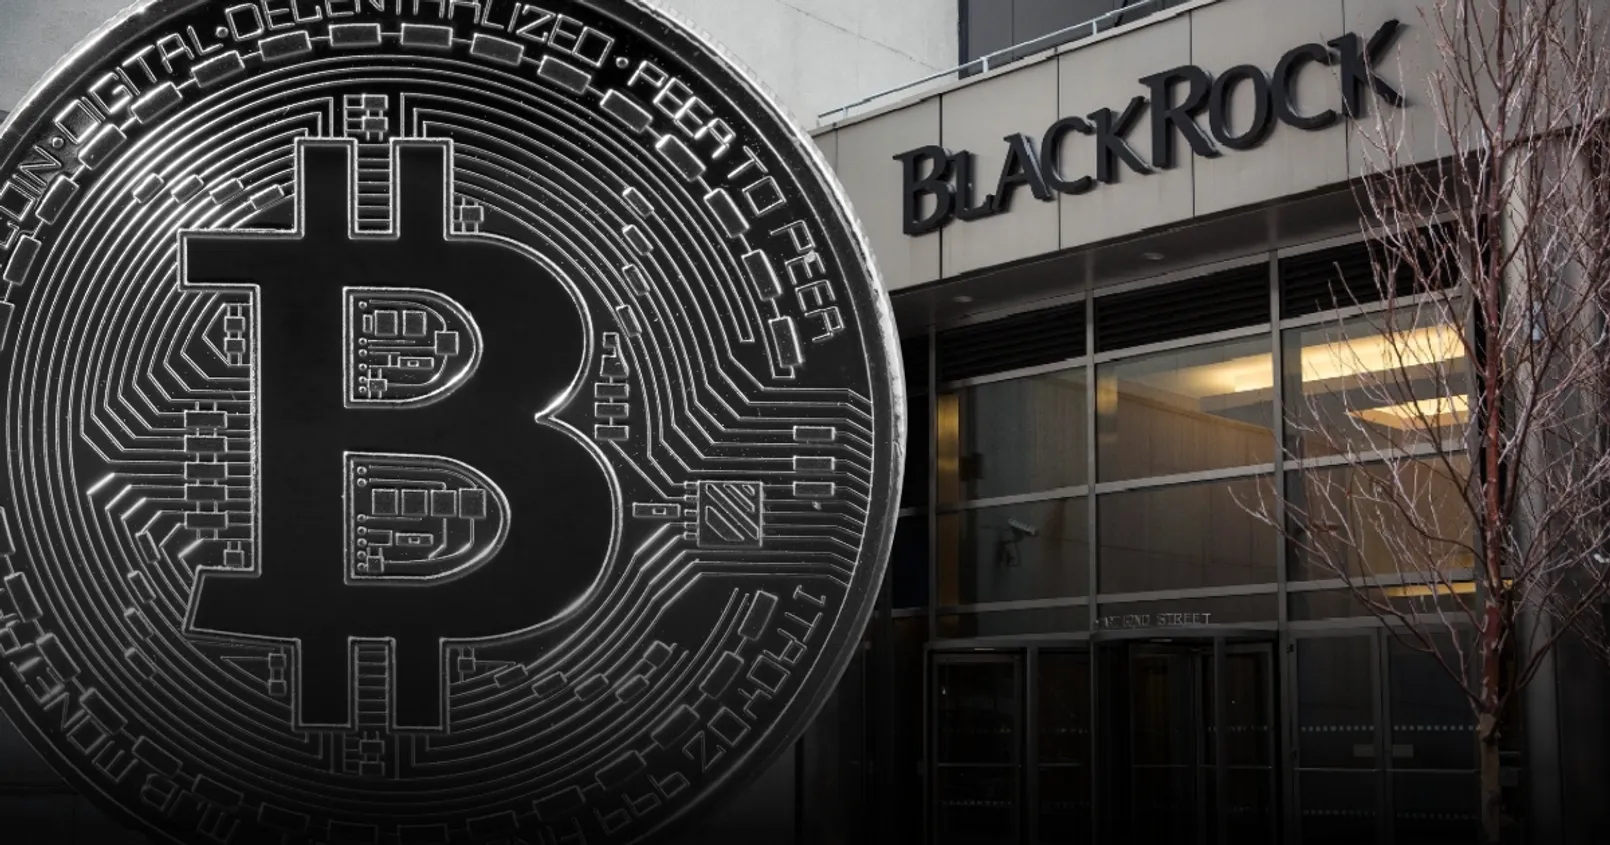 BlackRock เข้าซื้อ Bitcoin เพิ่มไปแล้วกว่า 3 หมื่นเหรียญ ในตลอดสัปดาห์ที่ผ่านมา